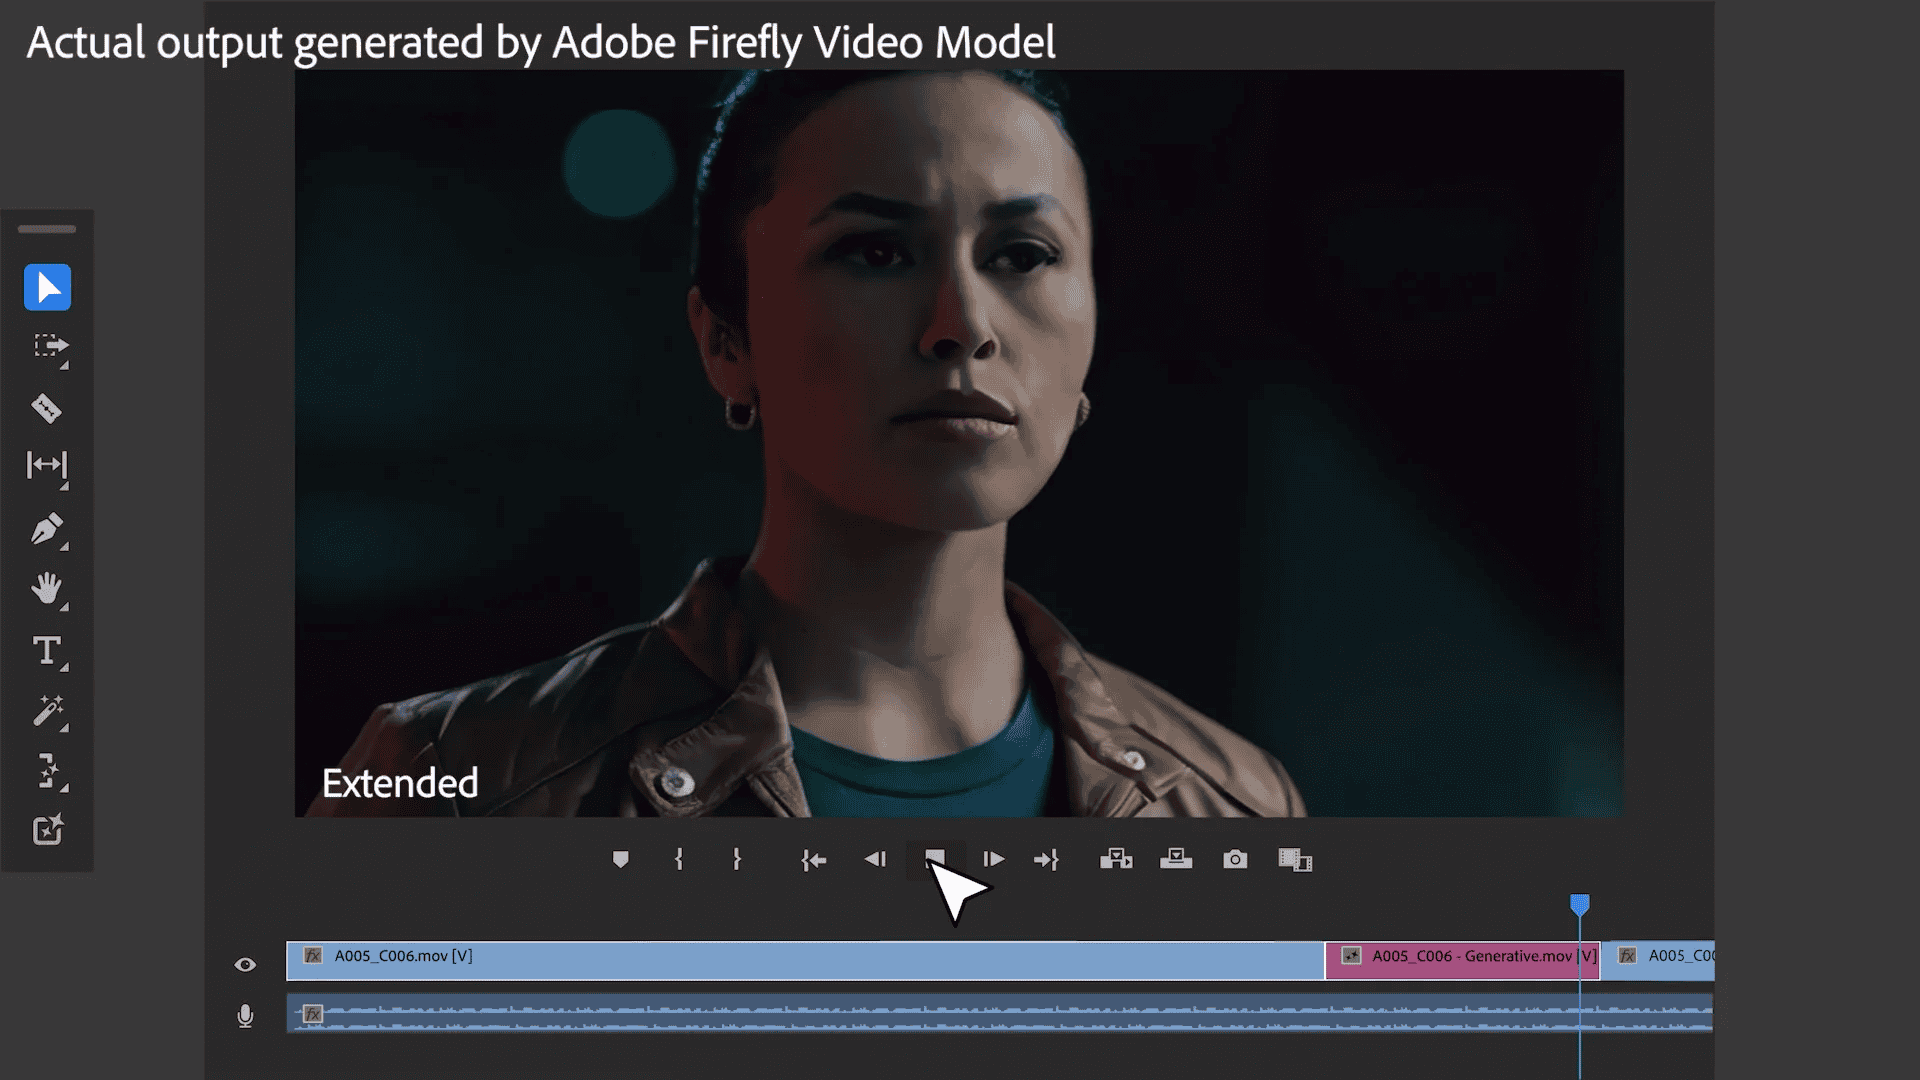 Adobe generative AI extend